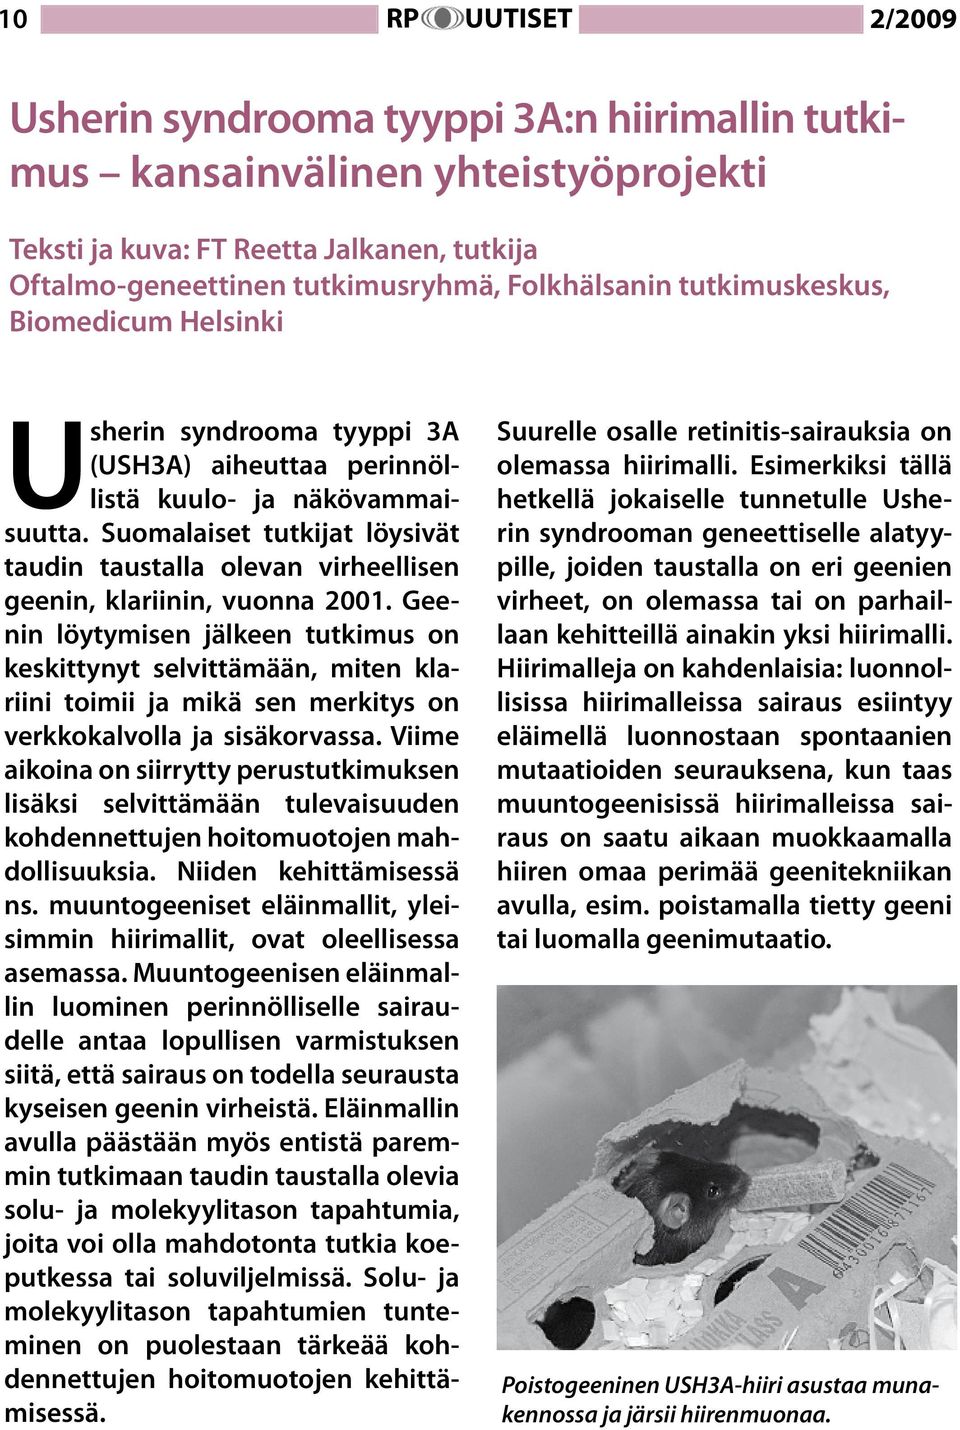 Suomalaiset tutkijat löysivät taudin taustalla olevan virheellisen geenin, klariinin, vuonna 2001.